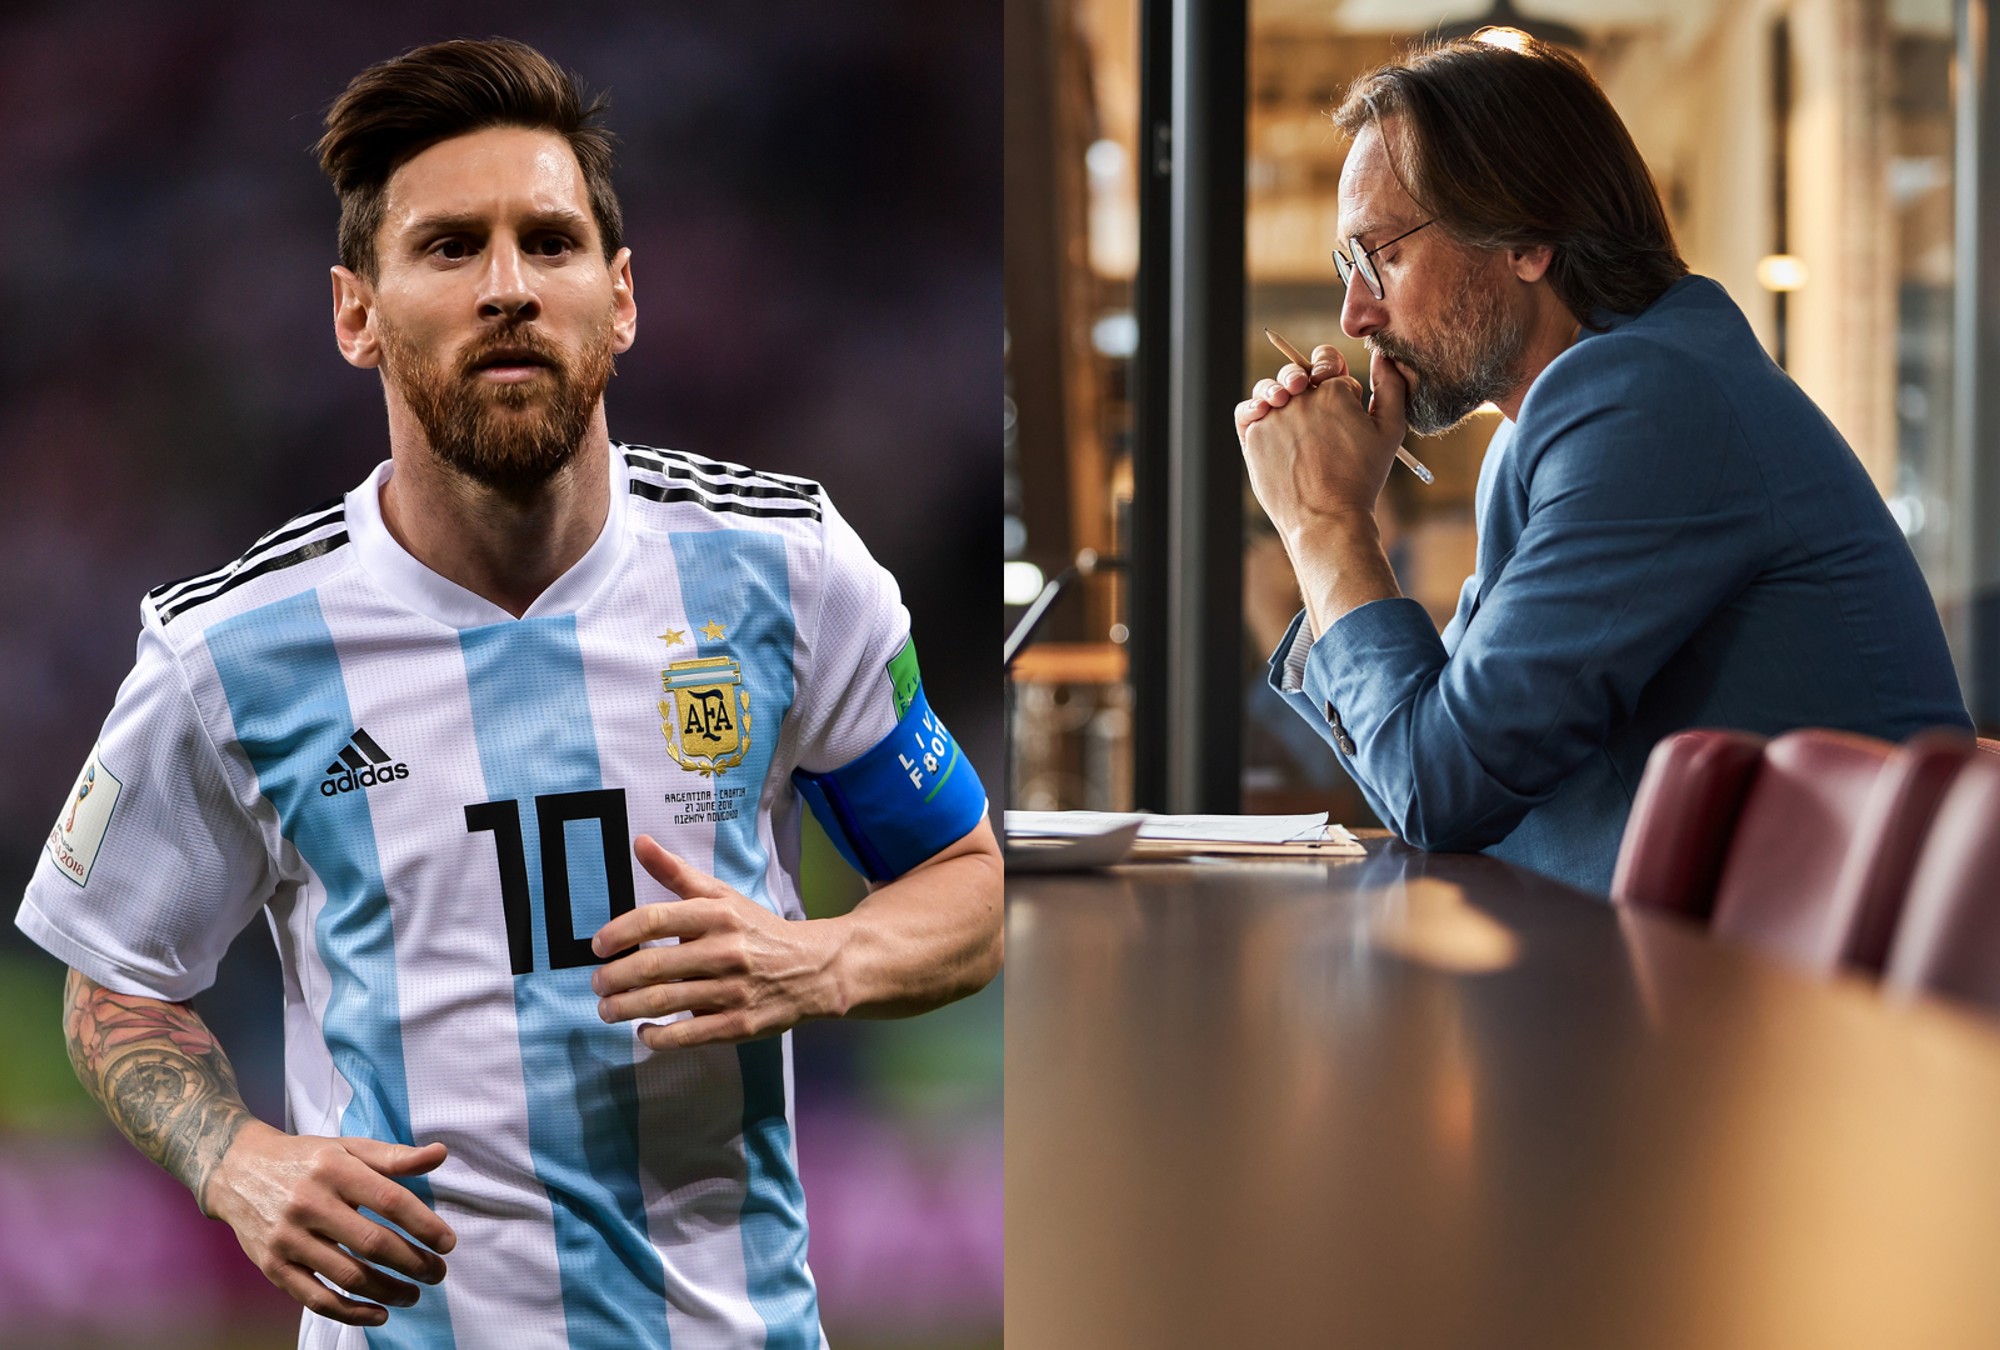 En publicidad veremos el efecto "Messi y el mérito individual Vs. lo colectivo".